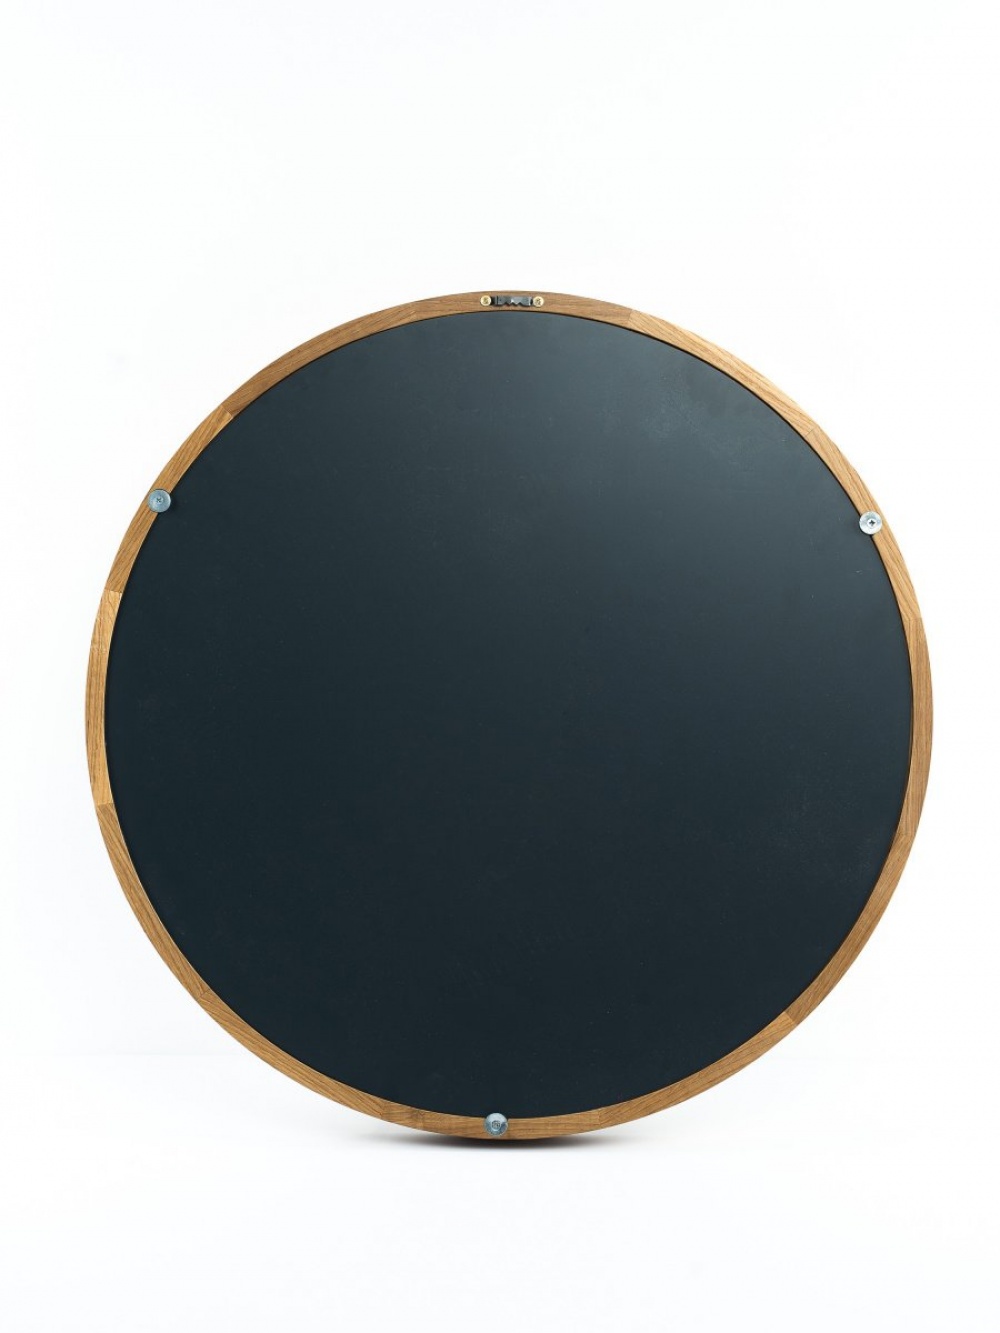 Зеркало дизайнерское круглое для ванной, спальни, гостиной, прихожей NEO mini 480мм